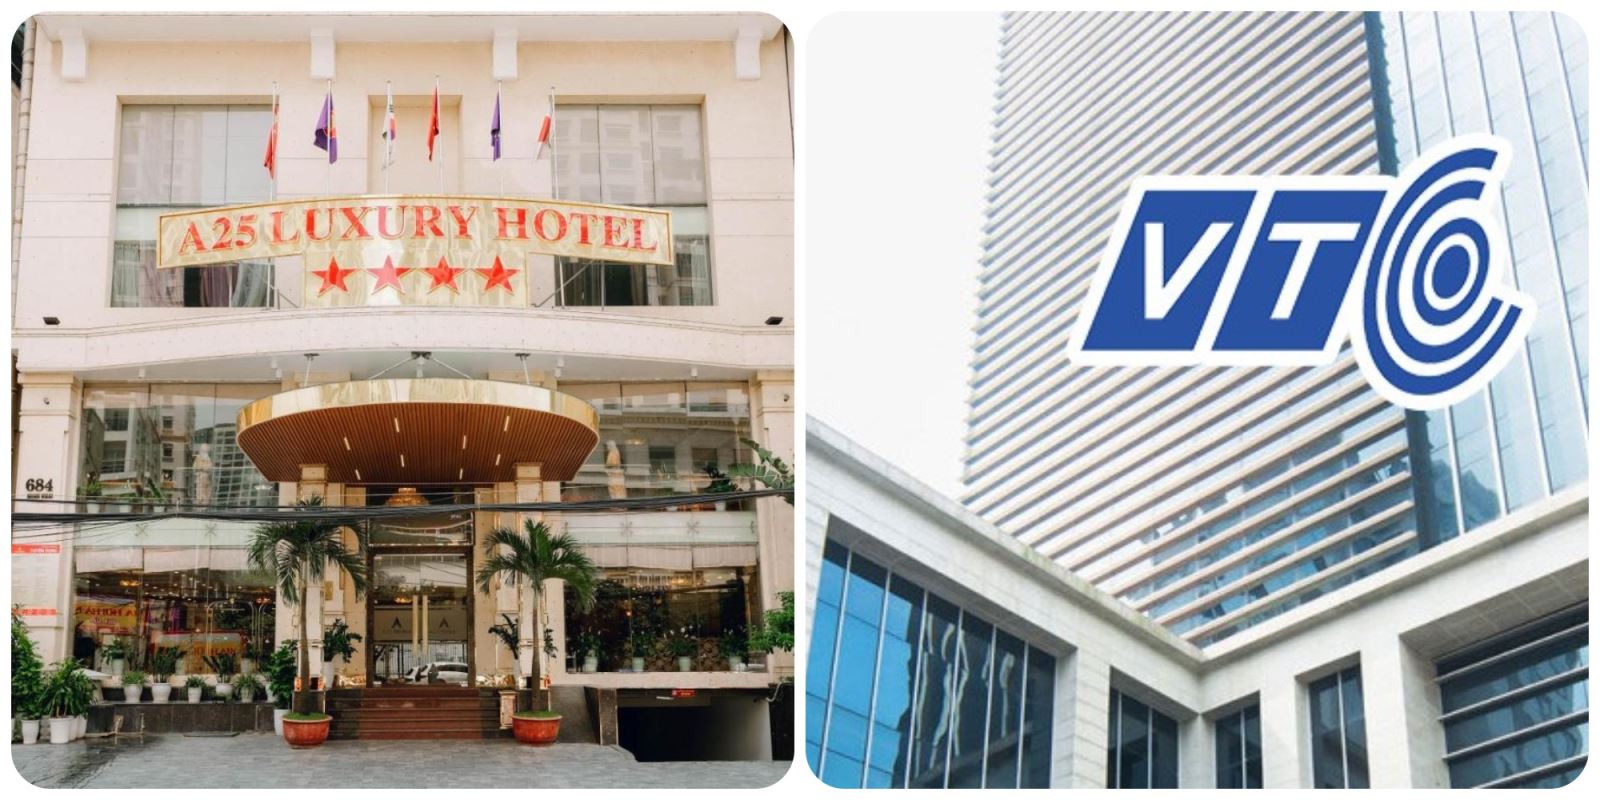 a25-luxury-hotel-684-minh-khai-chuc-mung-ngay-thanh-lap-quy-dai-truyen-hinh-ky-thuat-so-vtc